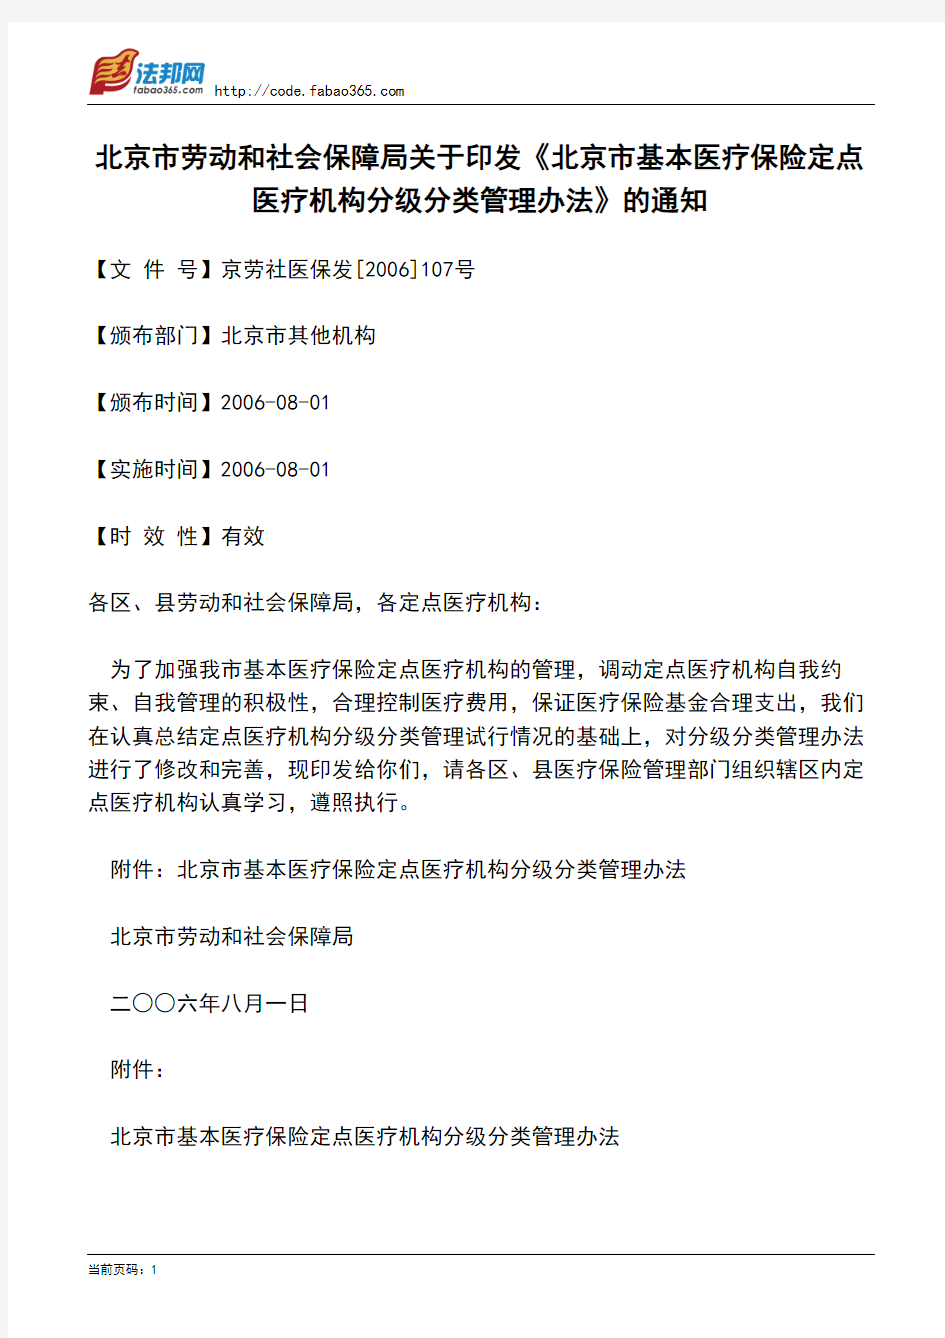 北京市劳动和社会保障局关于印发《北京市基本医疗保险定点医疗机构分级分类管理办法》的通知